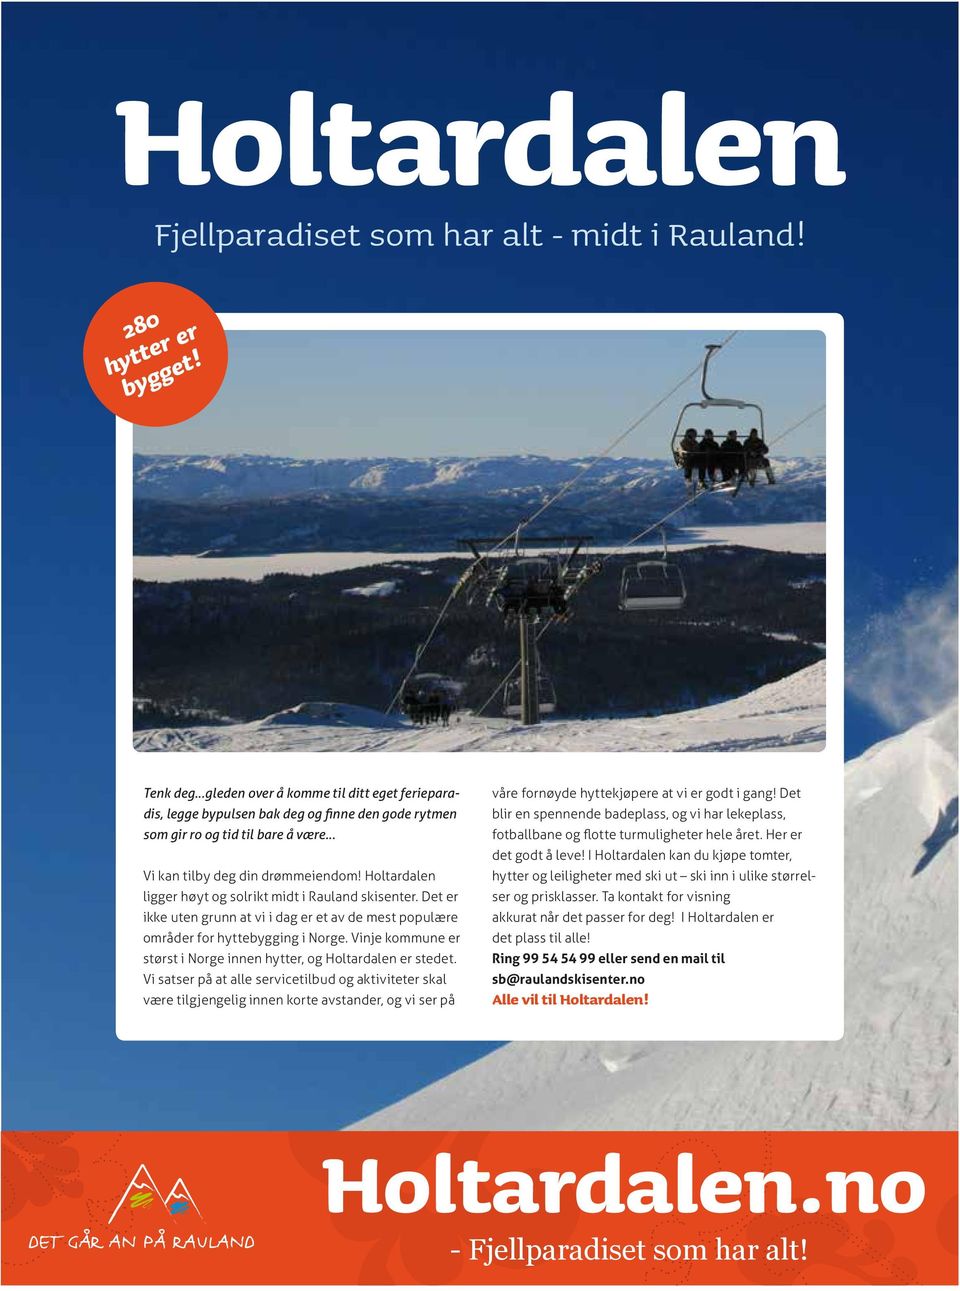 Holtardalen ligger høyt og solrikt midt i Rauland skisenter. Det er ikke uten grunn at vi i dag er et av de mest populære områder for hyttebygging i Norge.